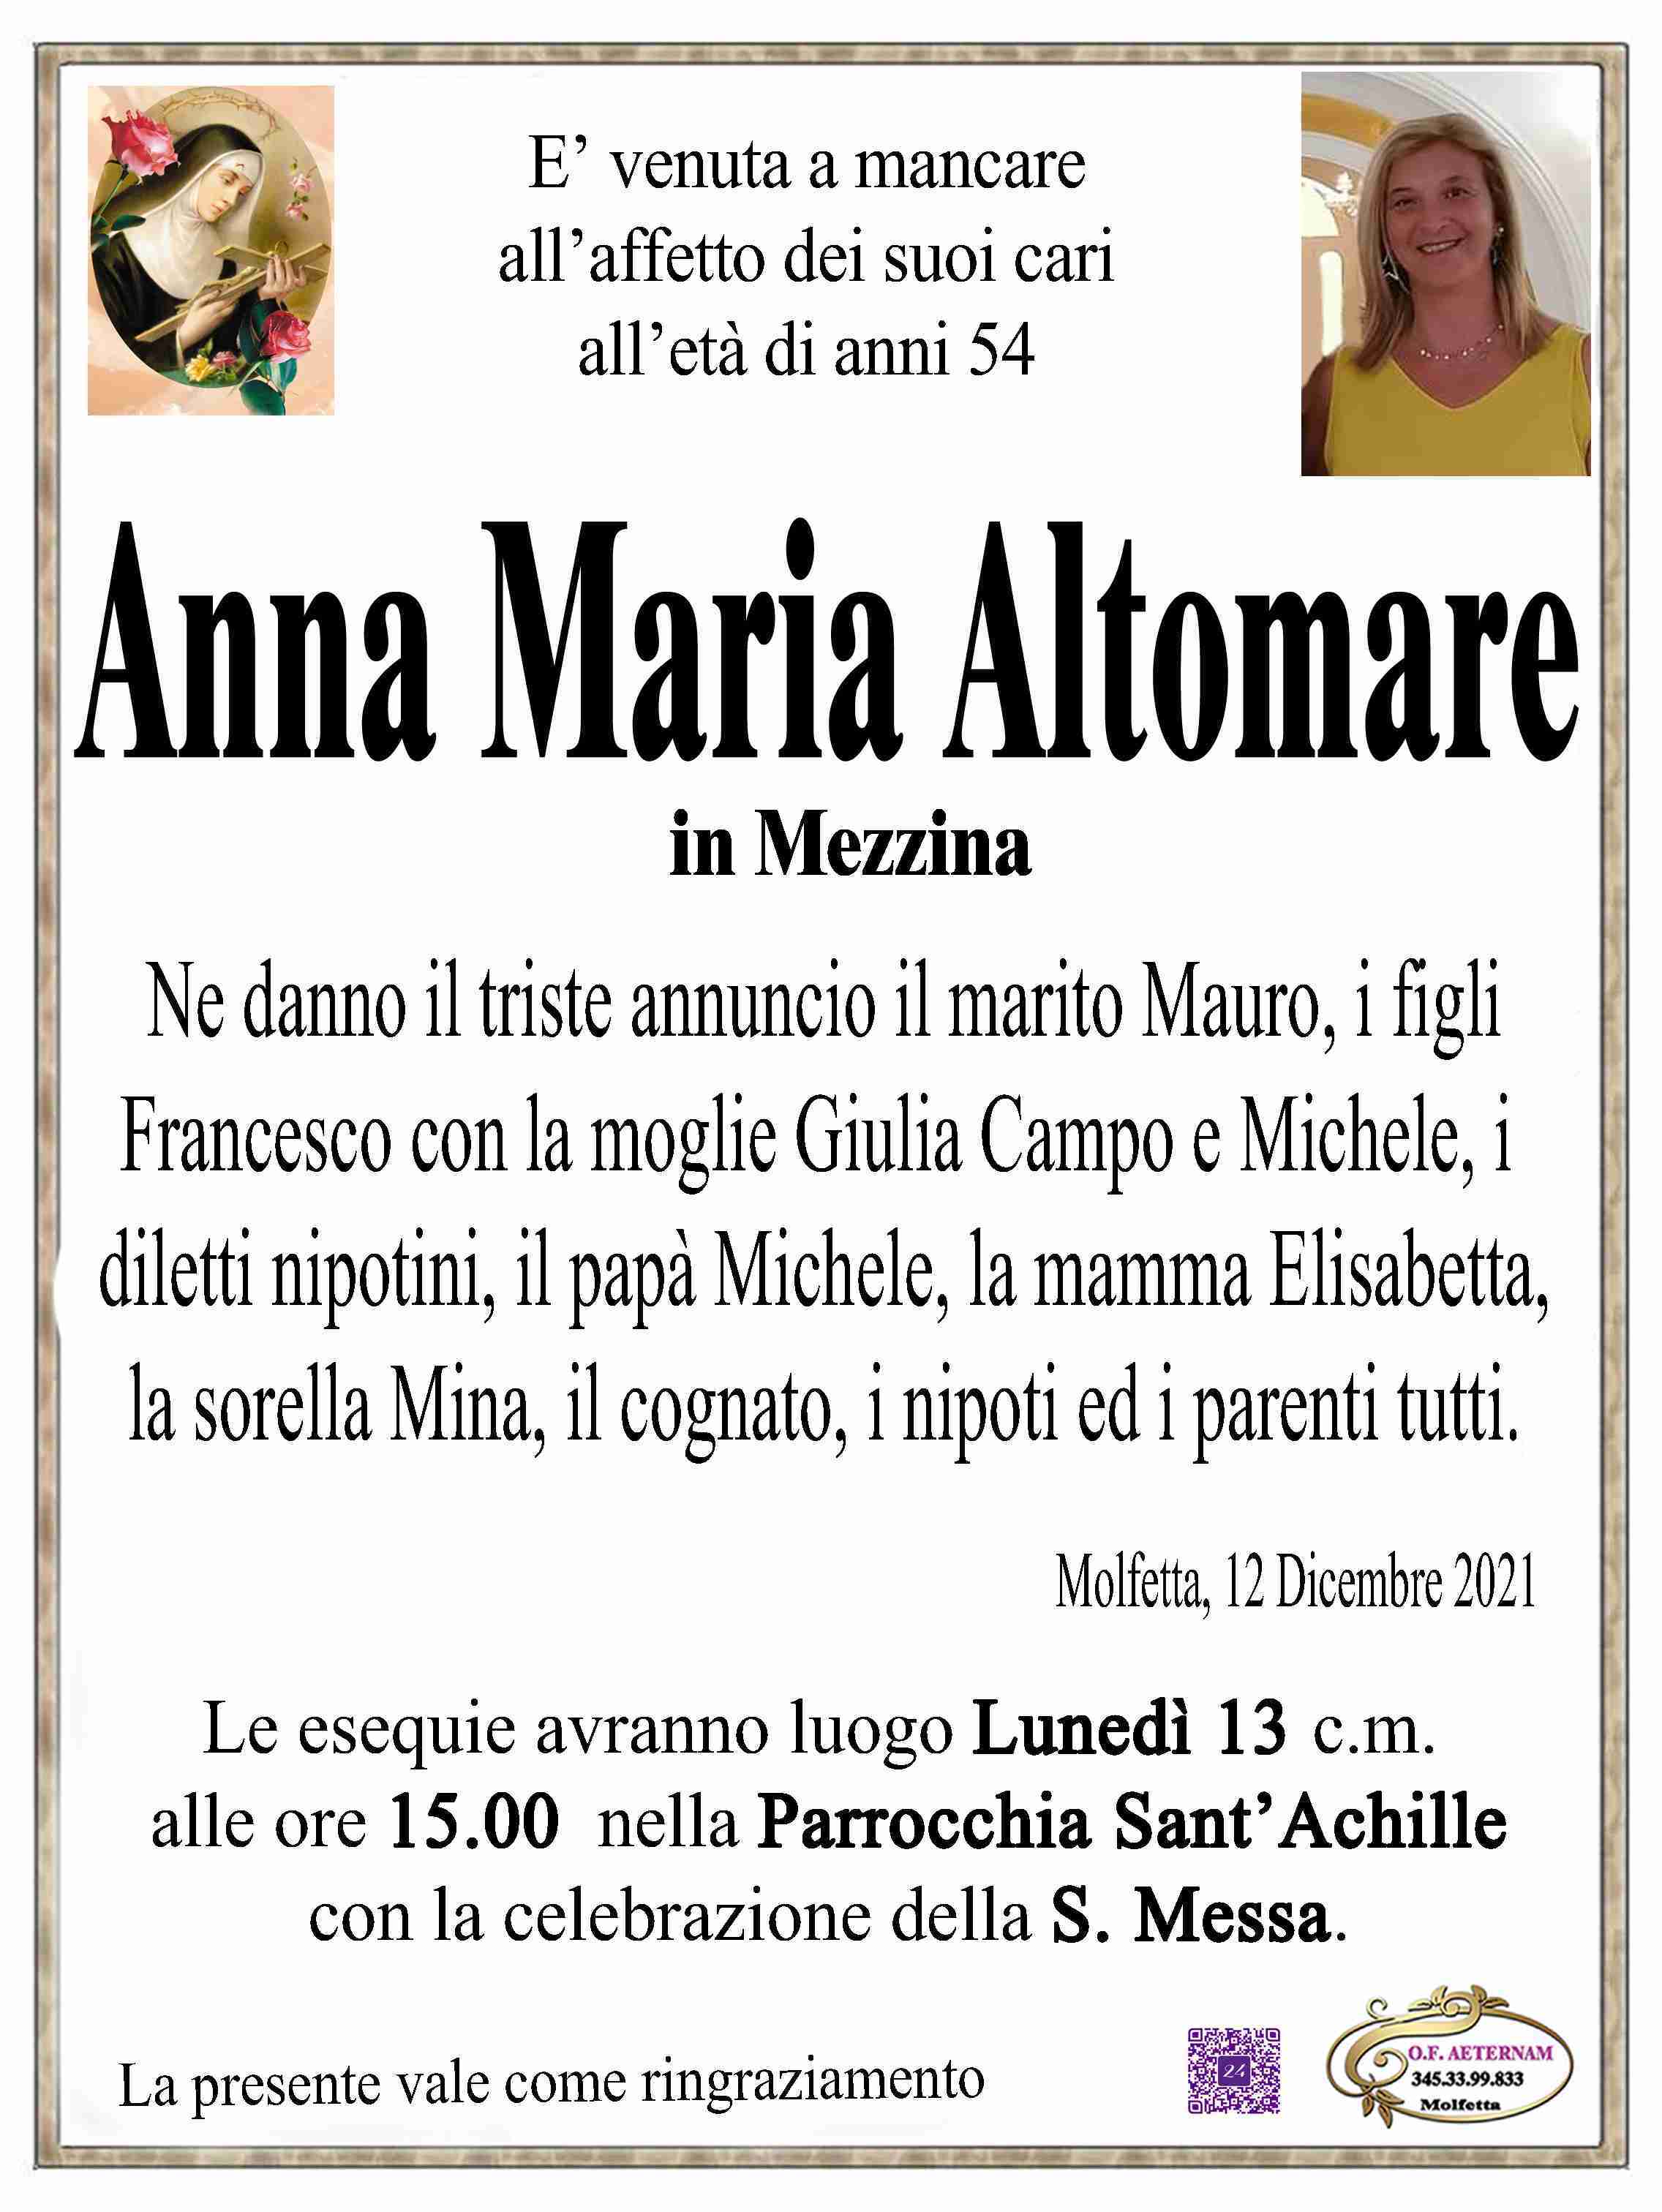 Anna Maria Altomare